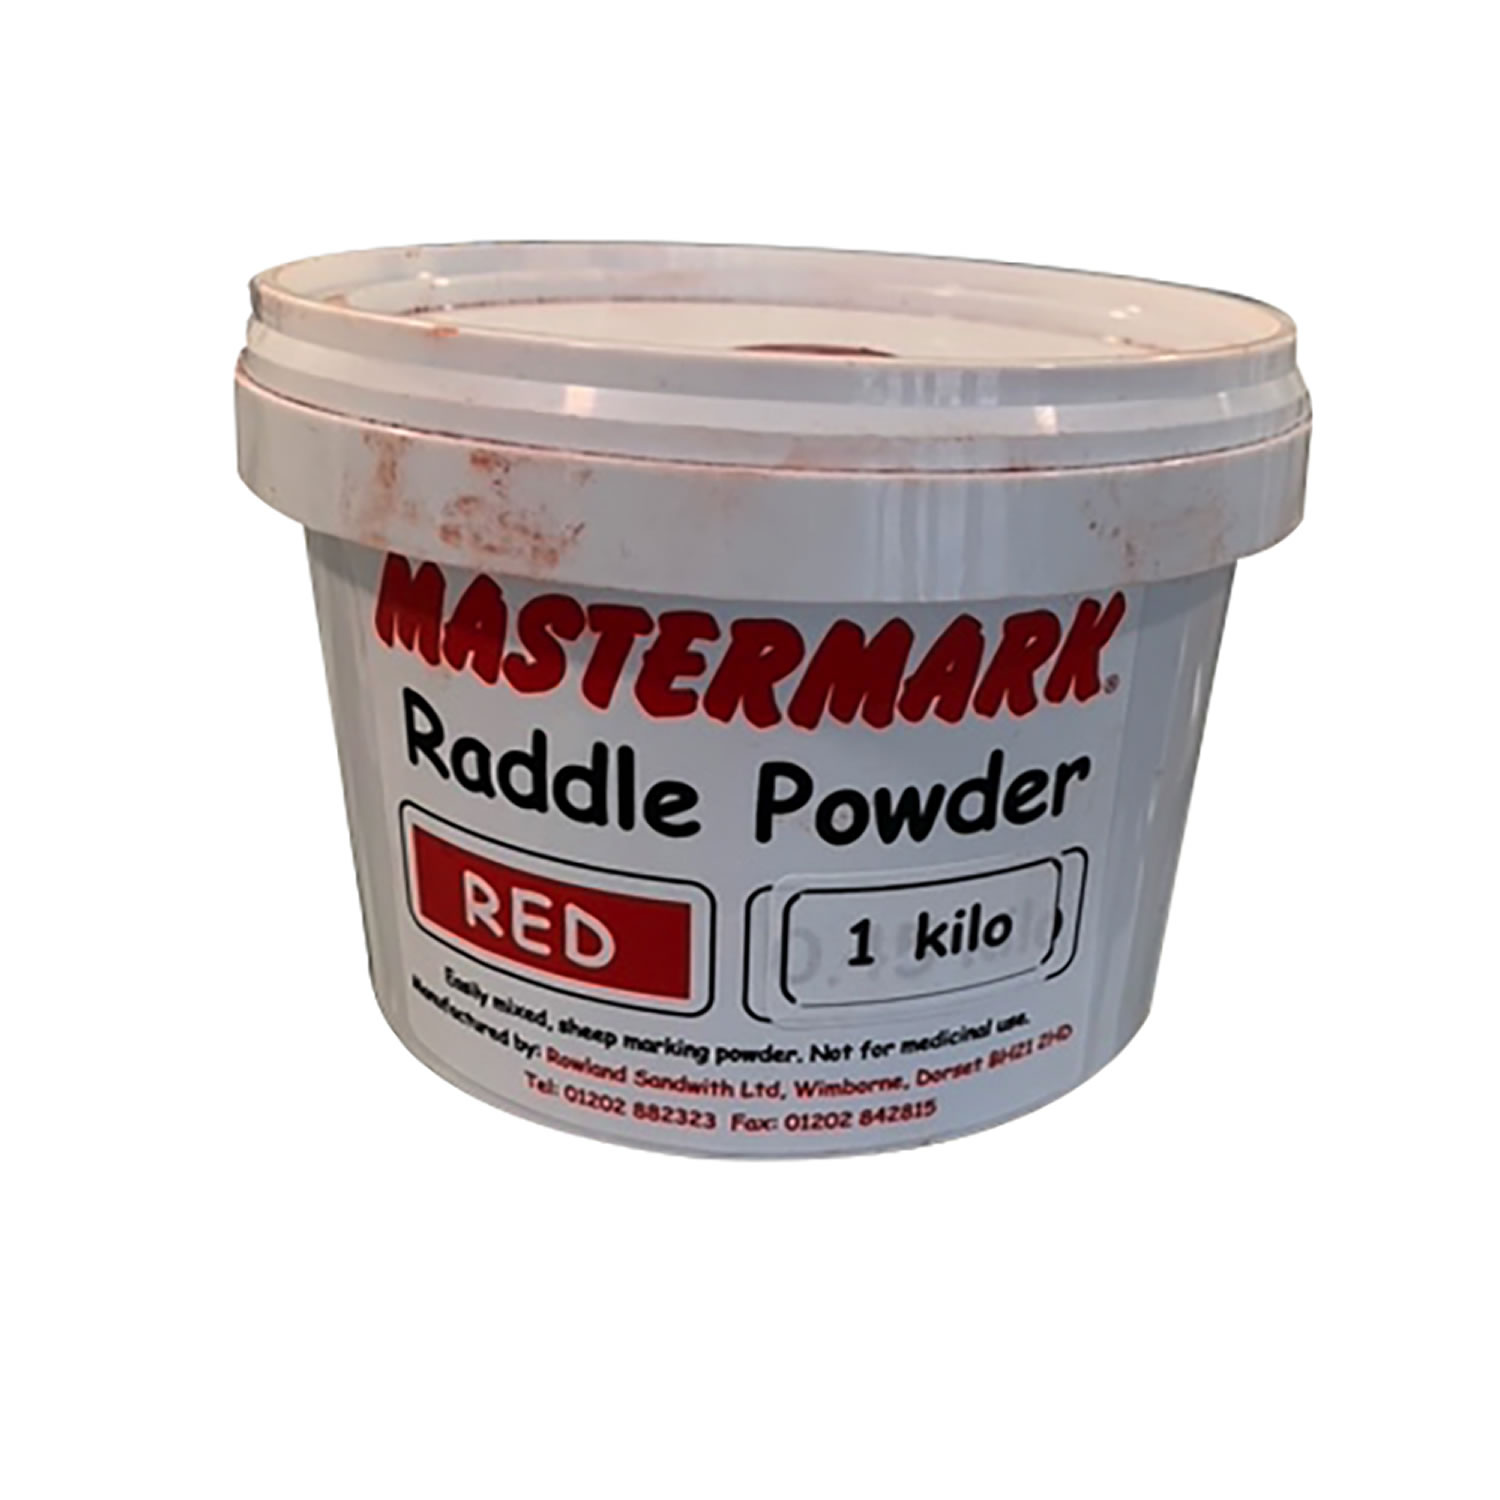 MASTERMARK RADDLE POWDER RED X 1 KG